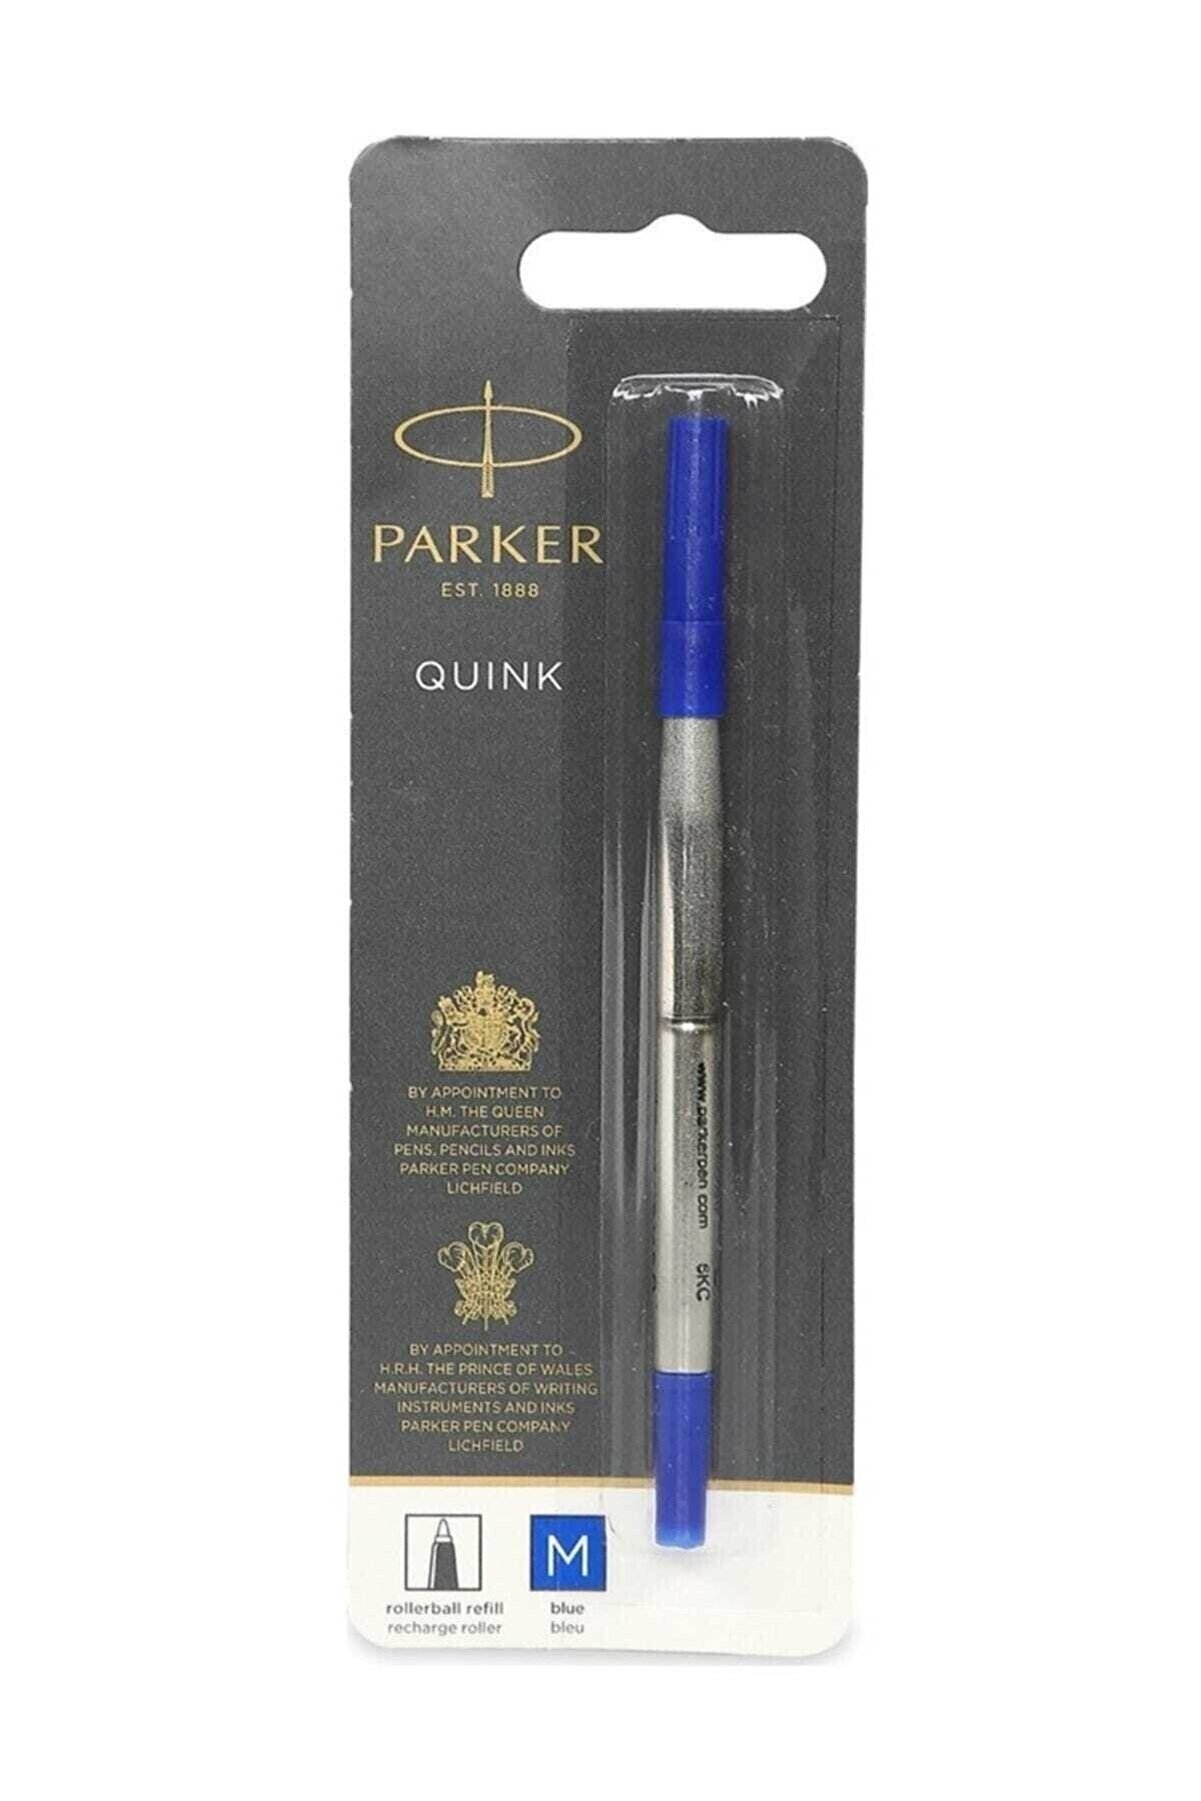 Parker Refil Roller Medium Mavi /